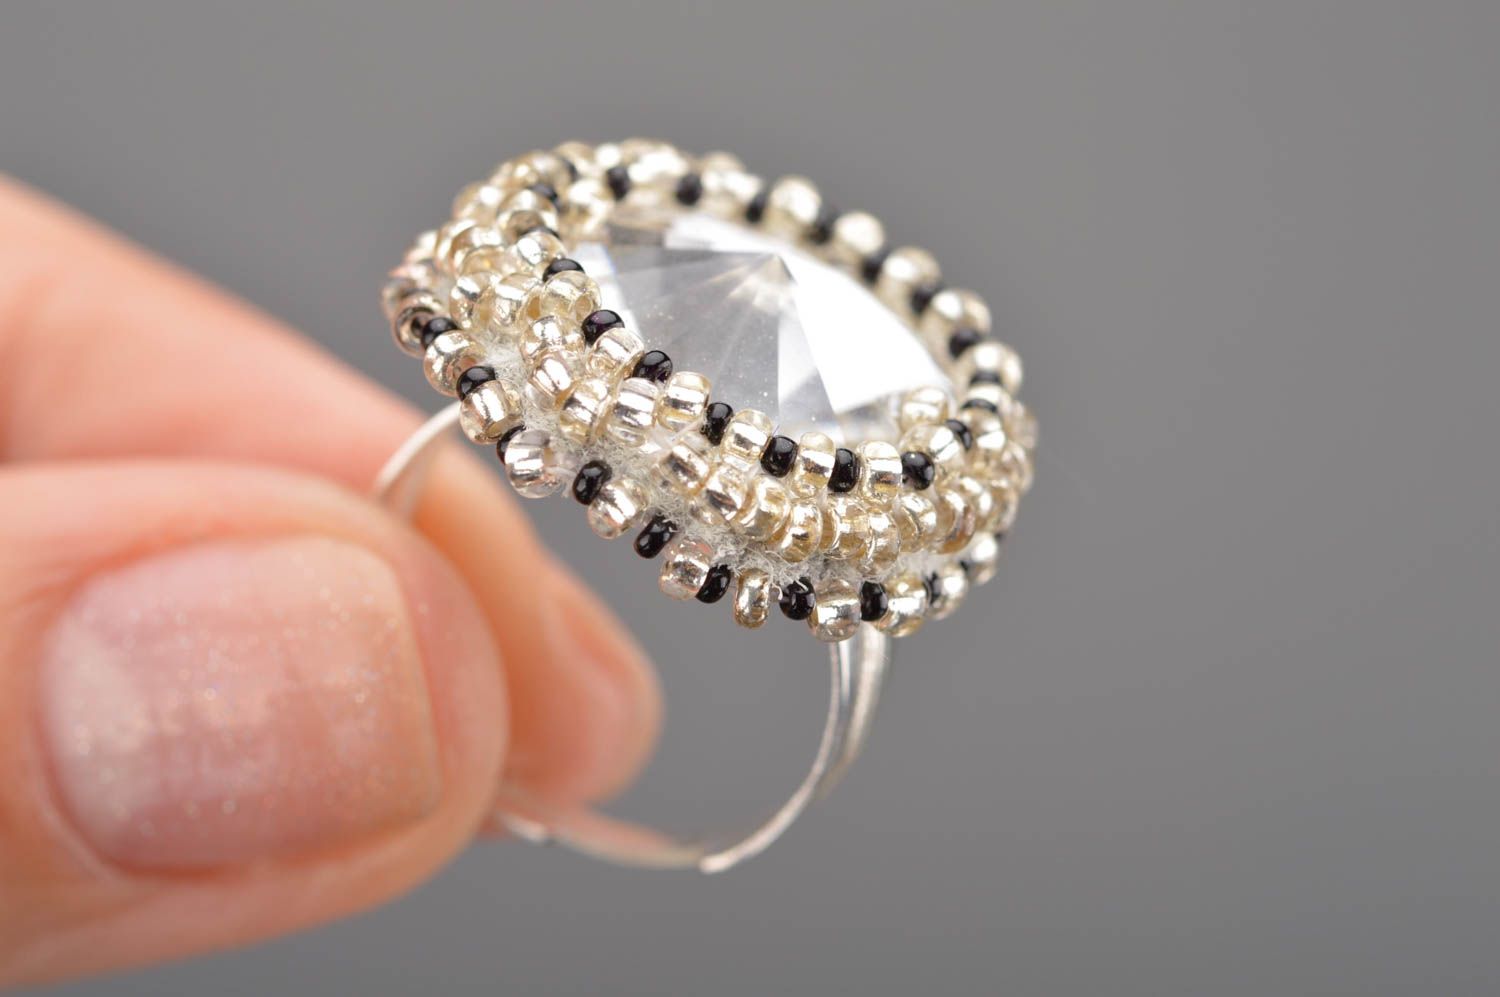 Прозрачное кольцо из бисера и кристалла ручной работы авторского дизайна фото 2